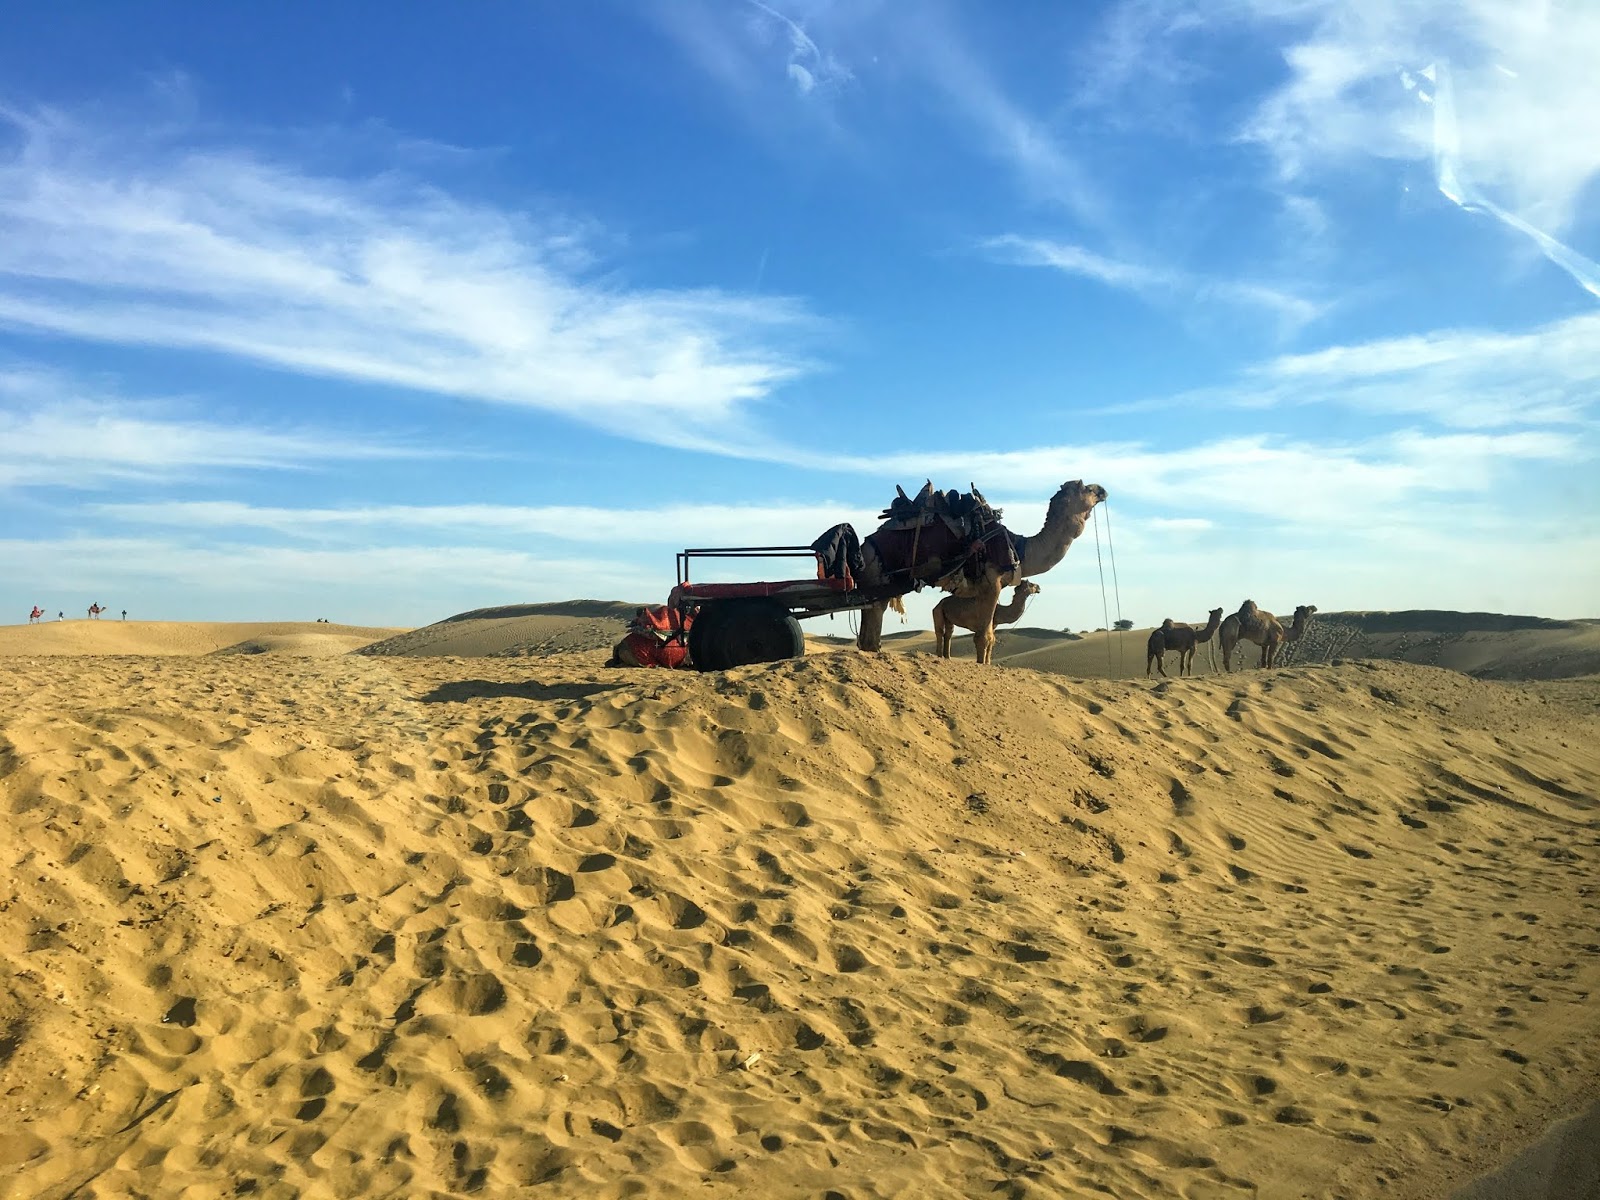 Sam Sand Dunes, Rajasthan